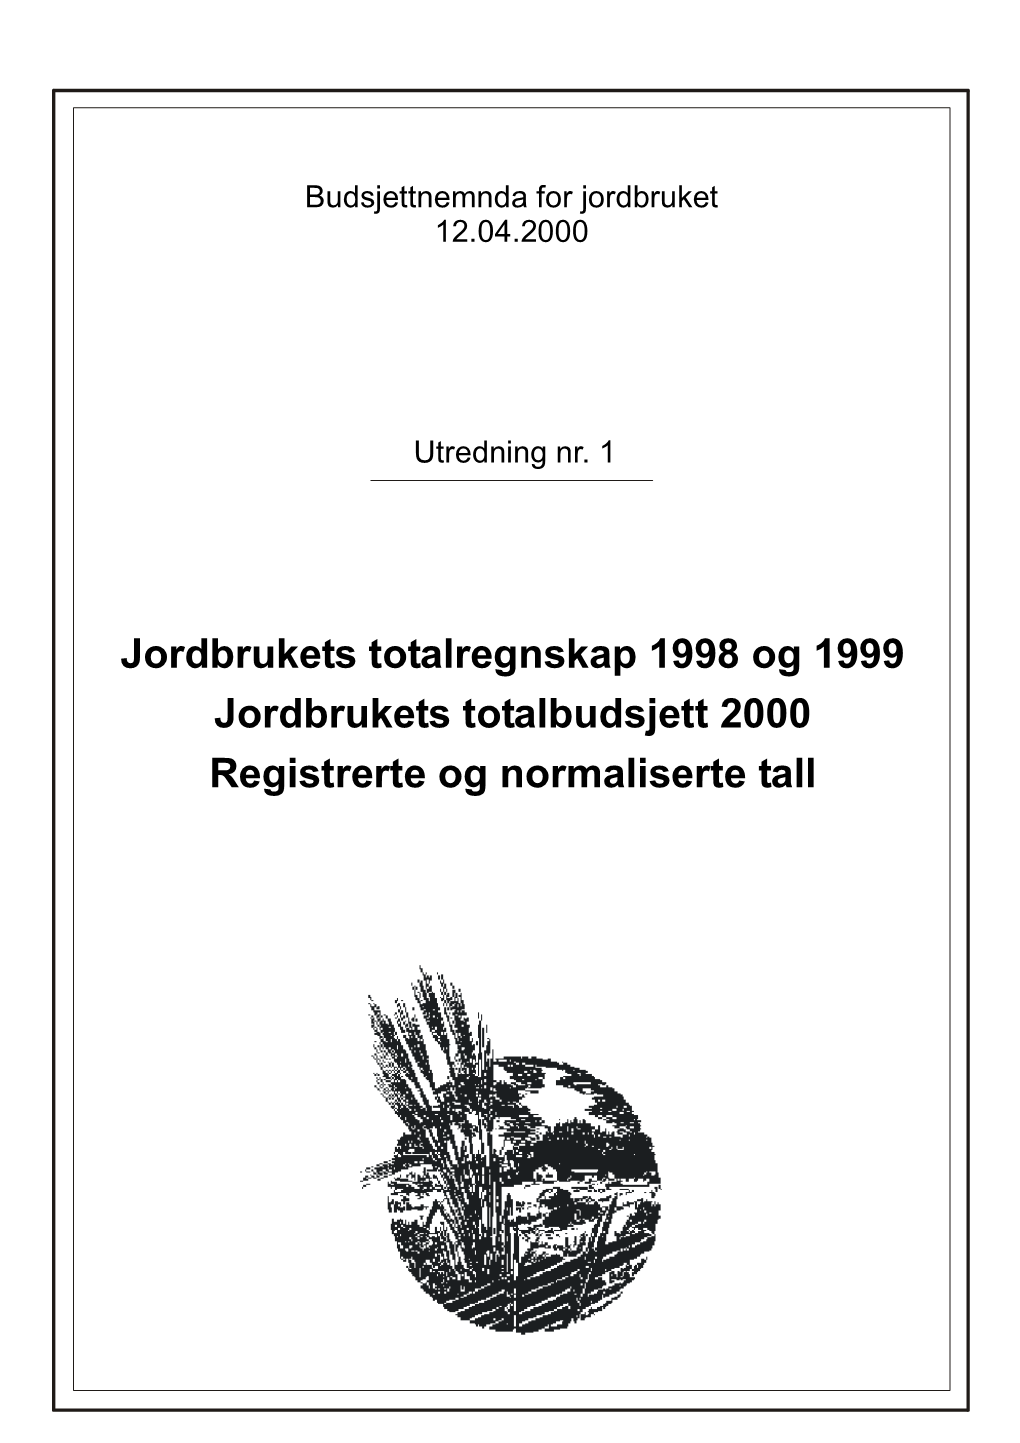 Budsjettnemnda for Jordbruket 12.04.2000